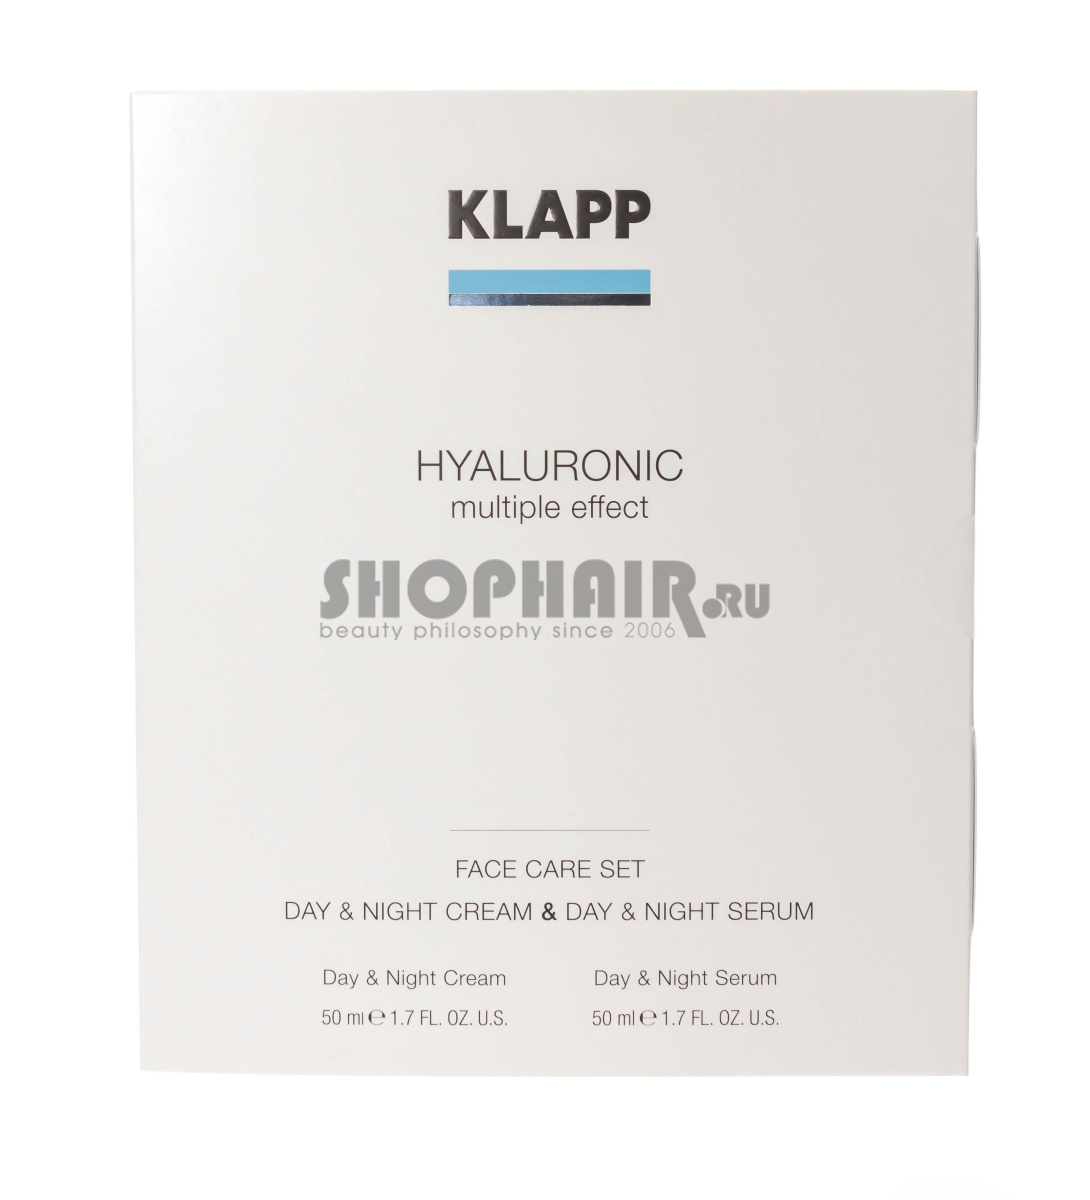 Klapp Hyaluronic Face Care Set - Набор (Крем 50 мл, сыворотка 50 мл) Klapp (Германия) купить по цене 11 328 руб.